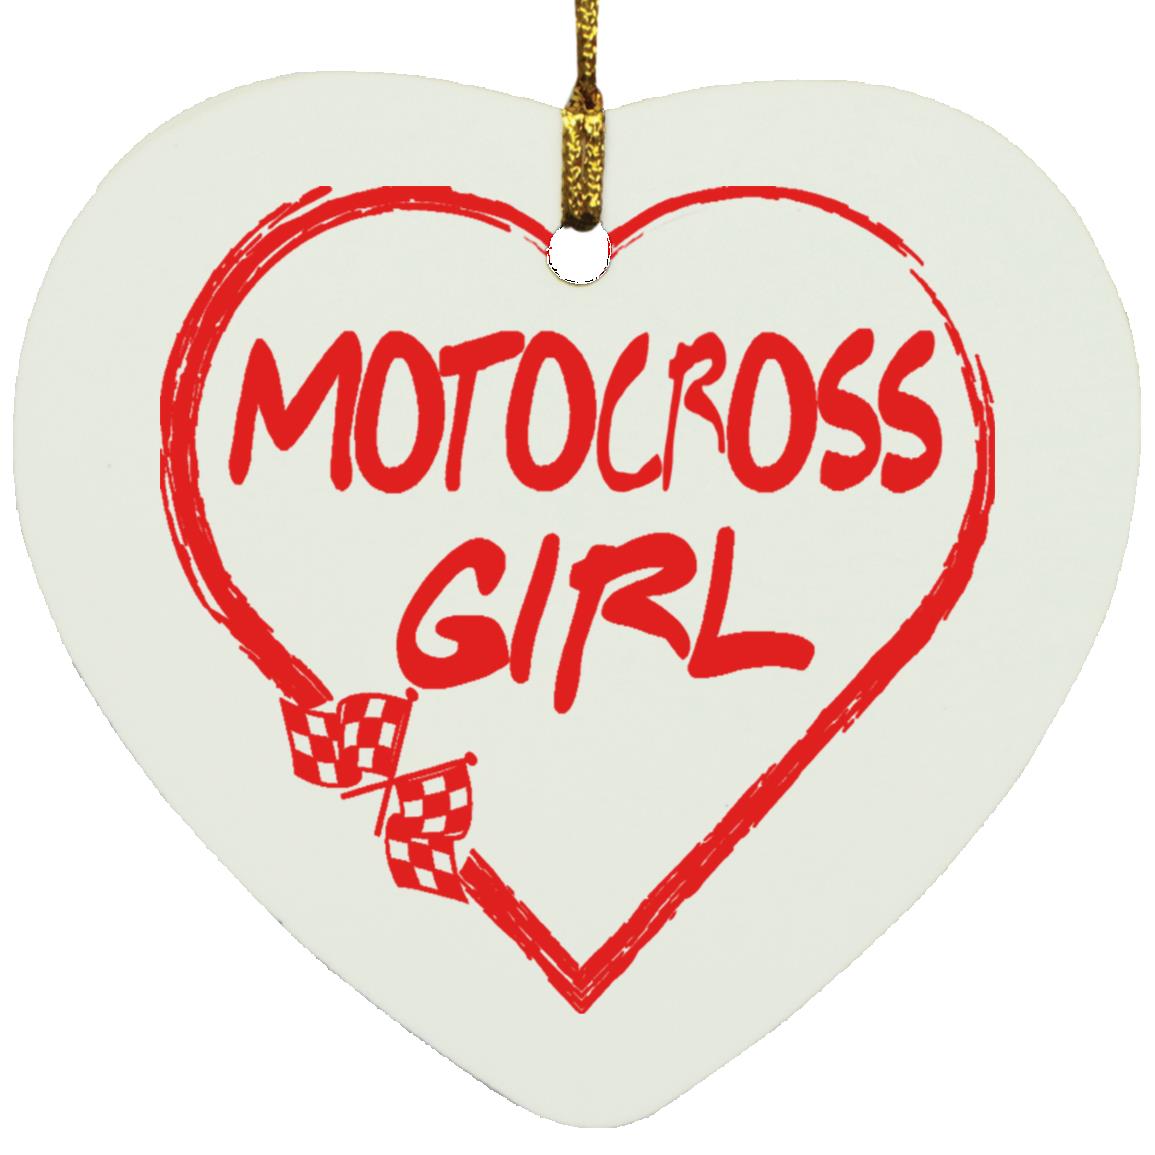 Motocross Girl Heart Ornament